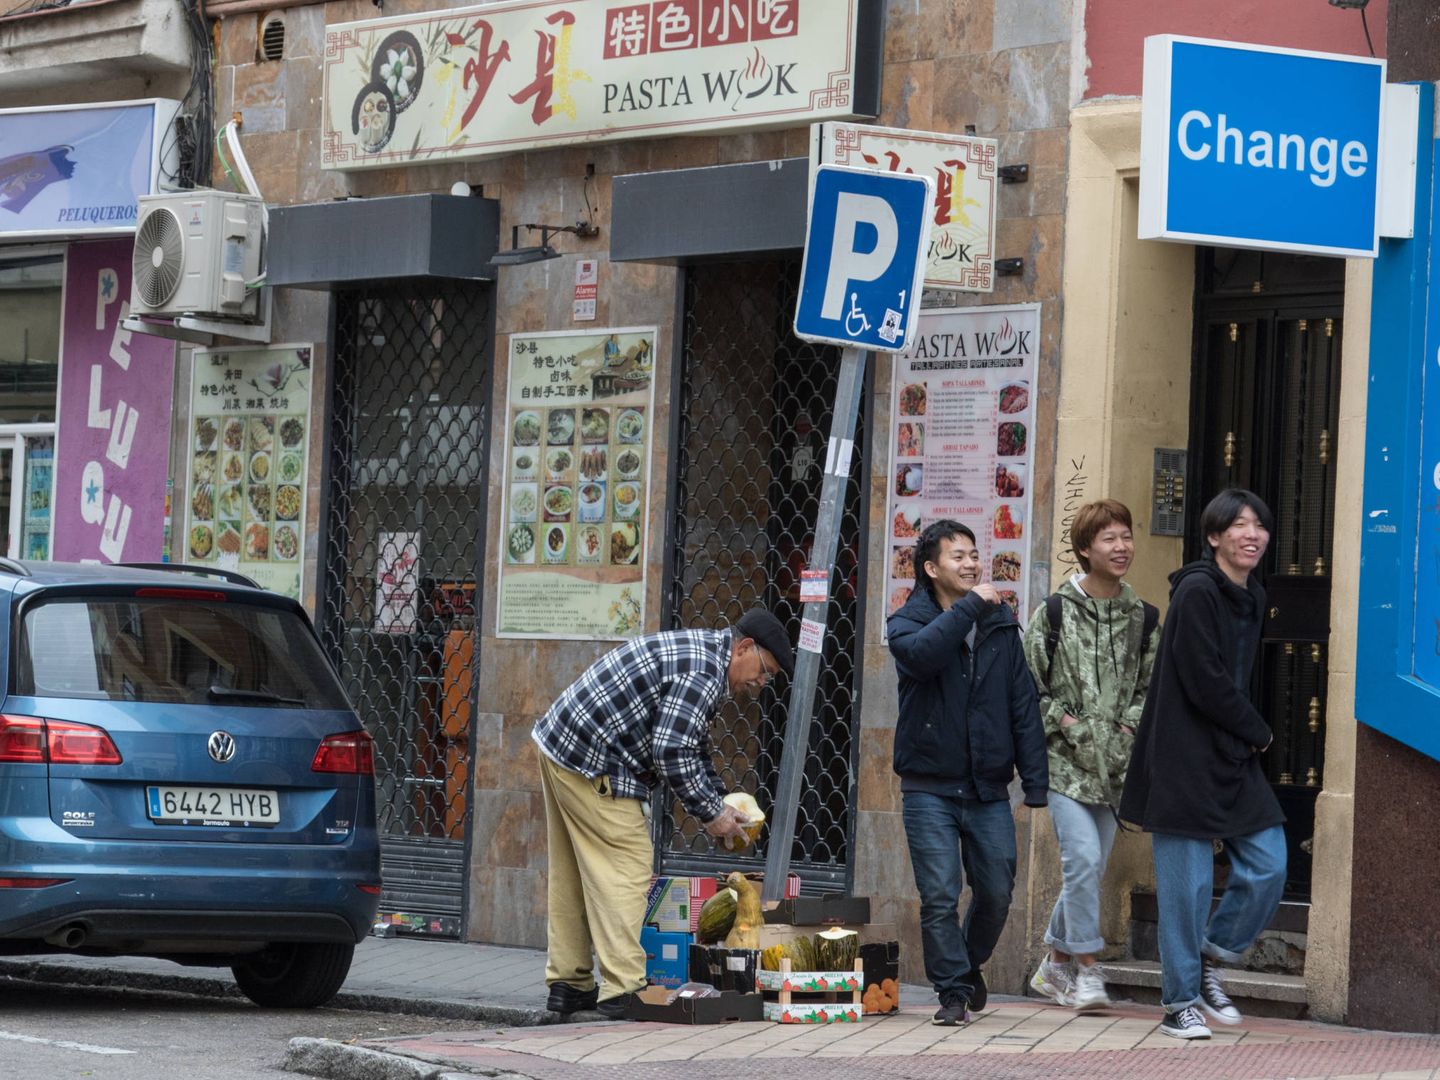 Tres jóvenes pasan de largo por un restaurante cerrado en Usera, Madrid. (D. B.)